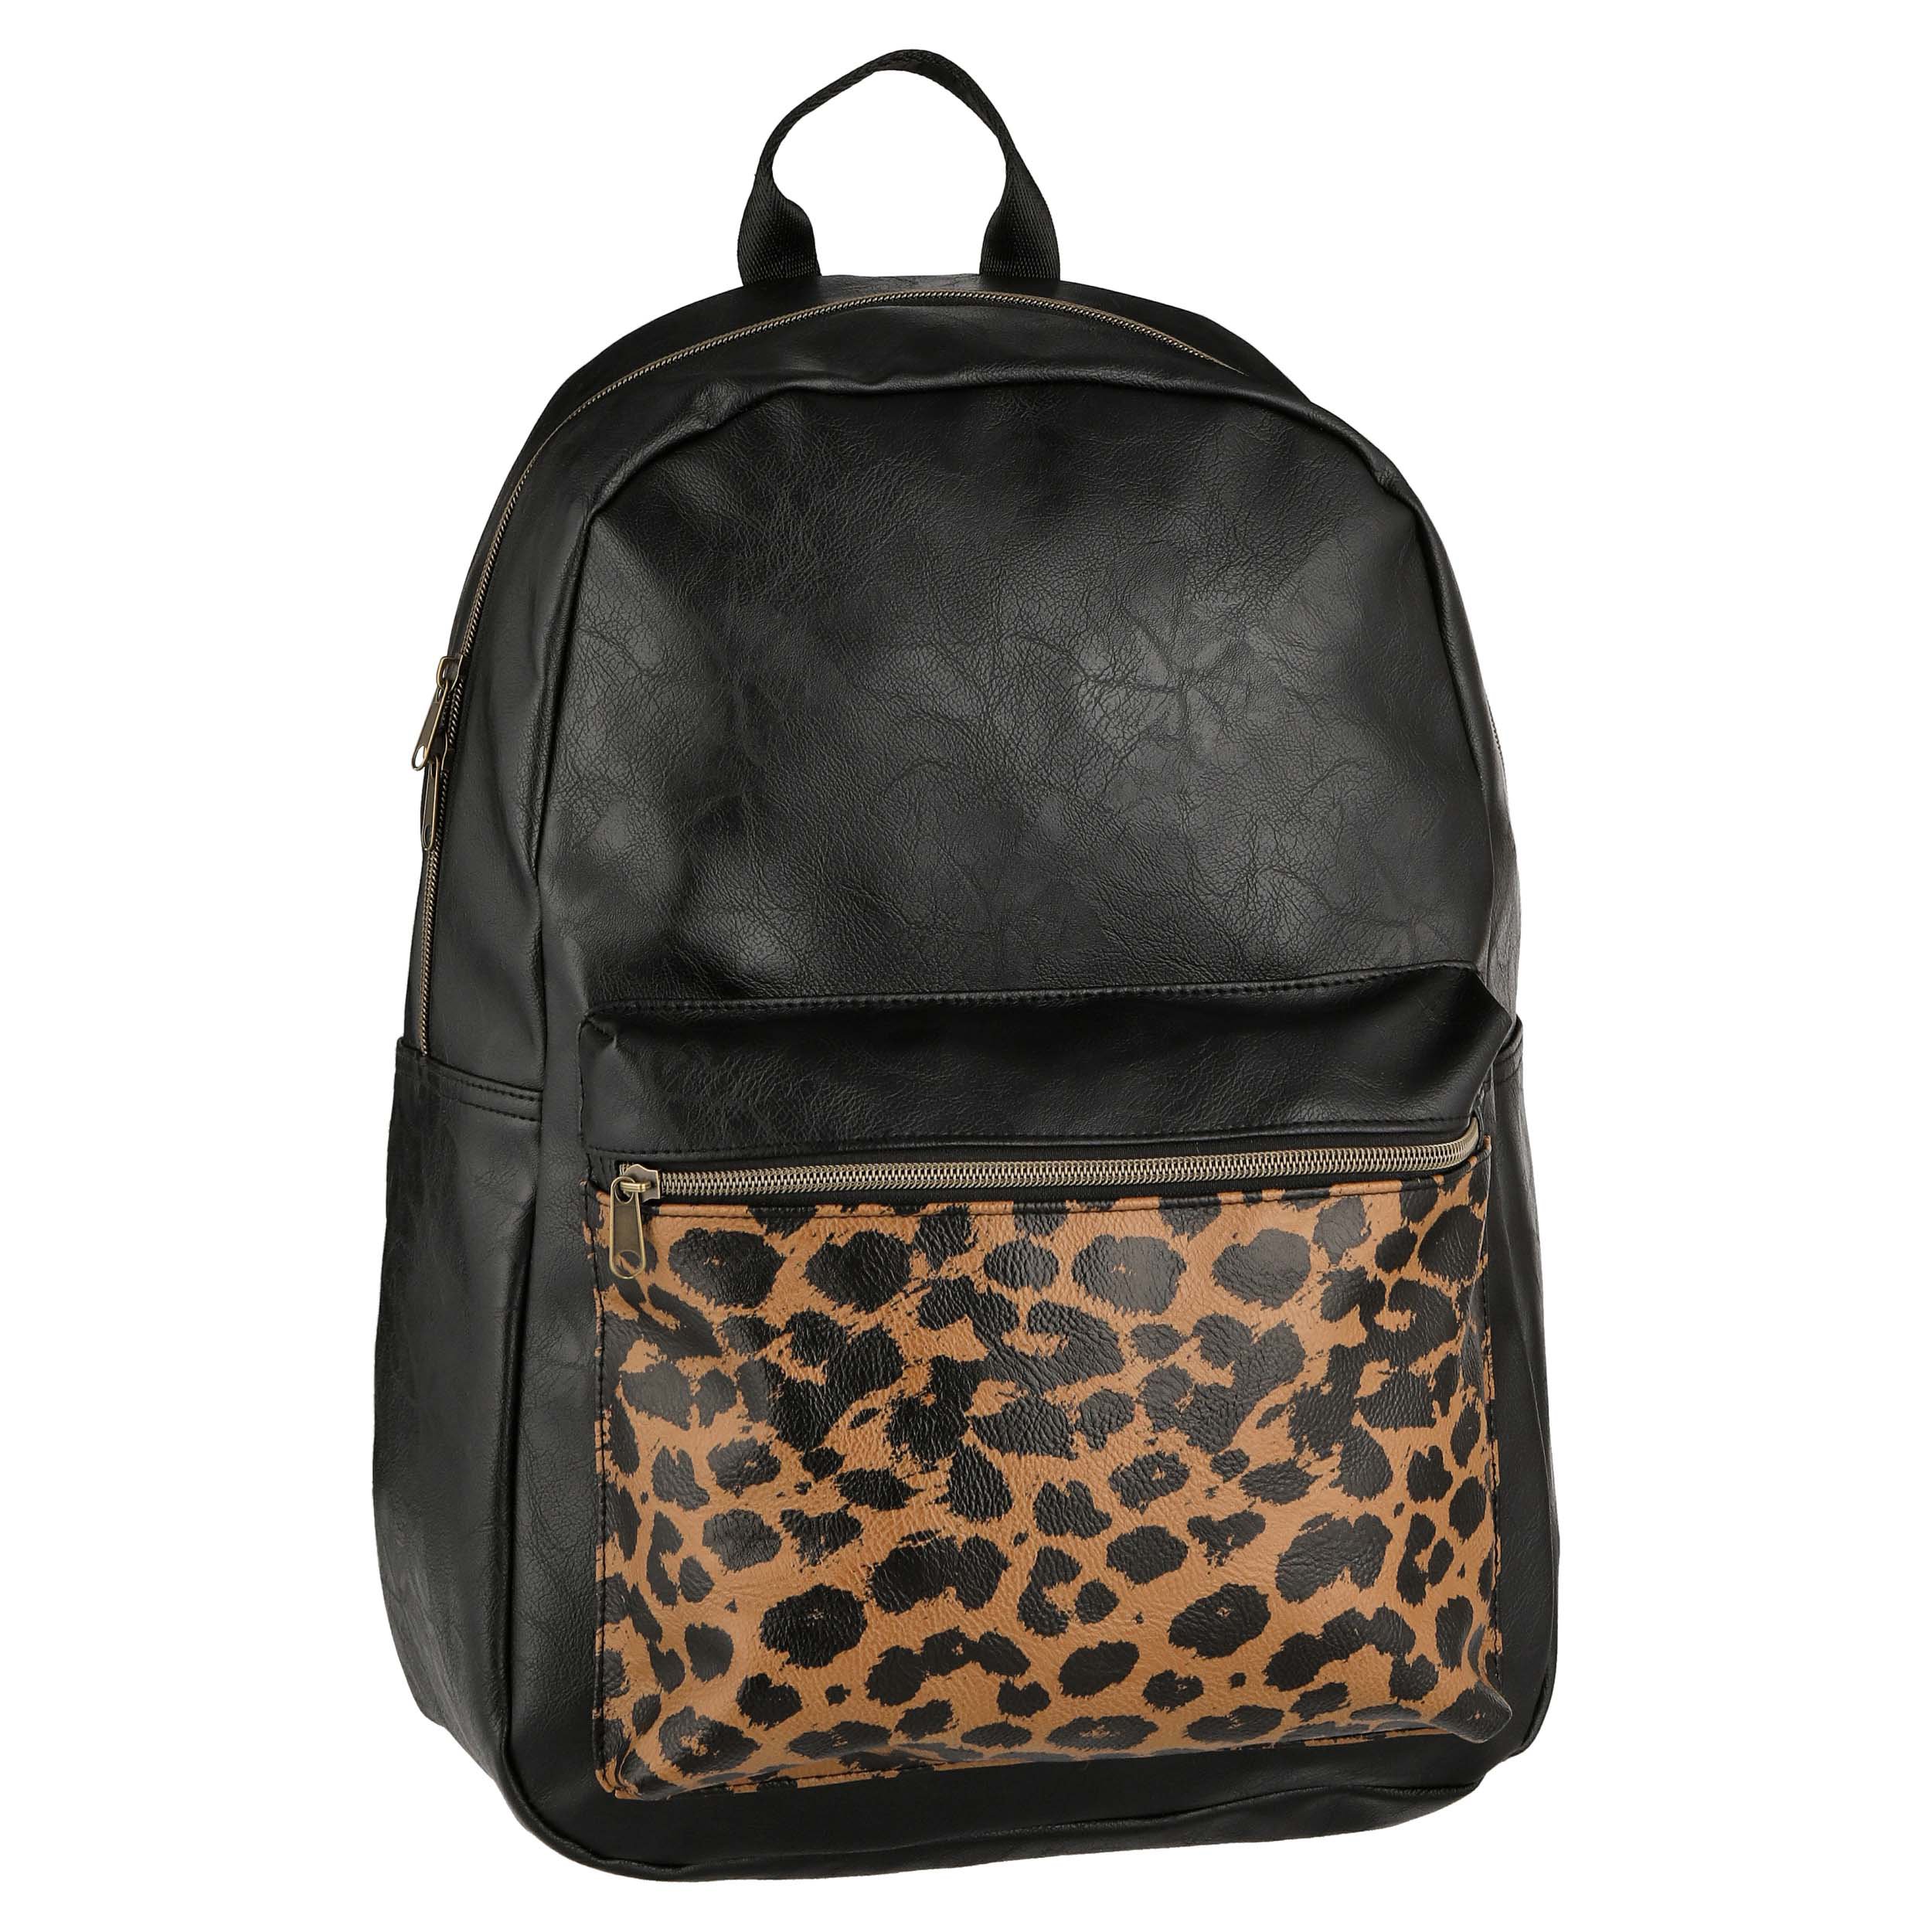 Emma & Chloe Black Vinyl & Leopard Backpack - Shop Backpacks at H-E-B